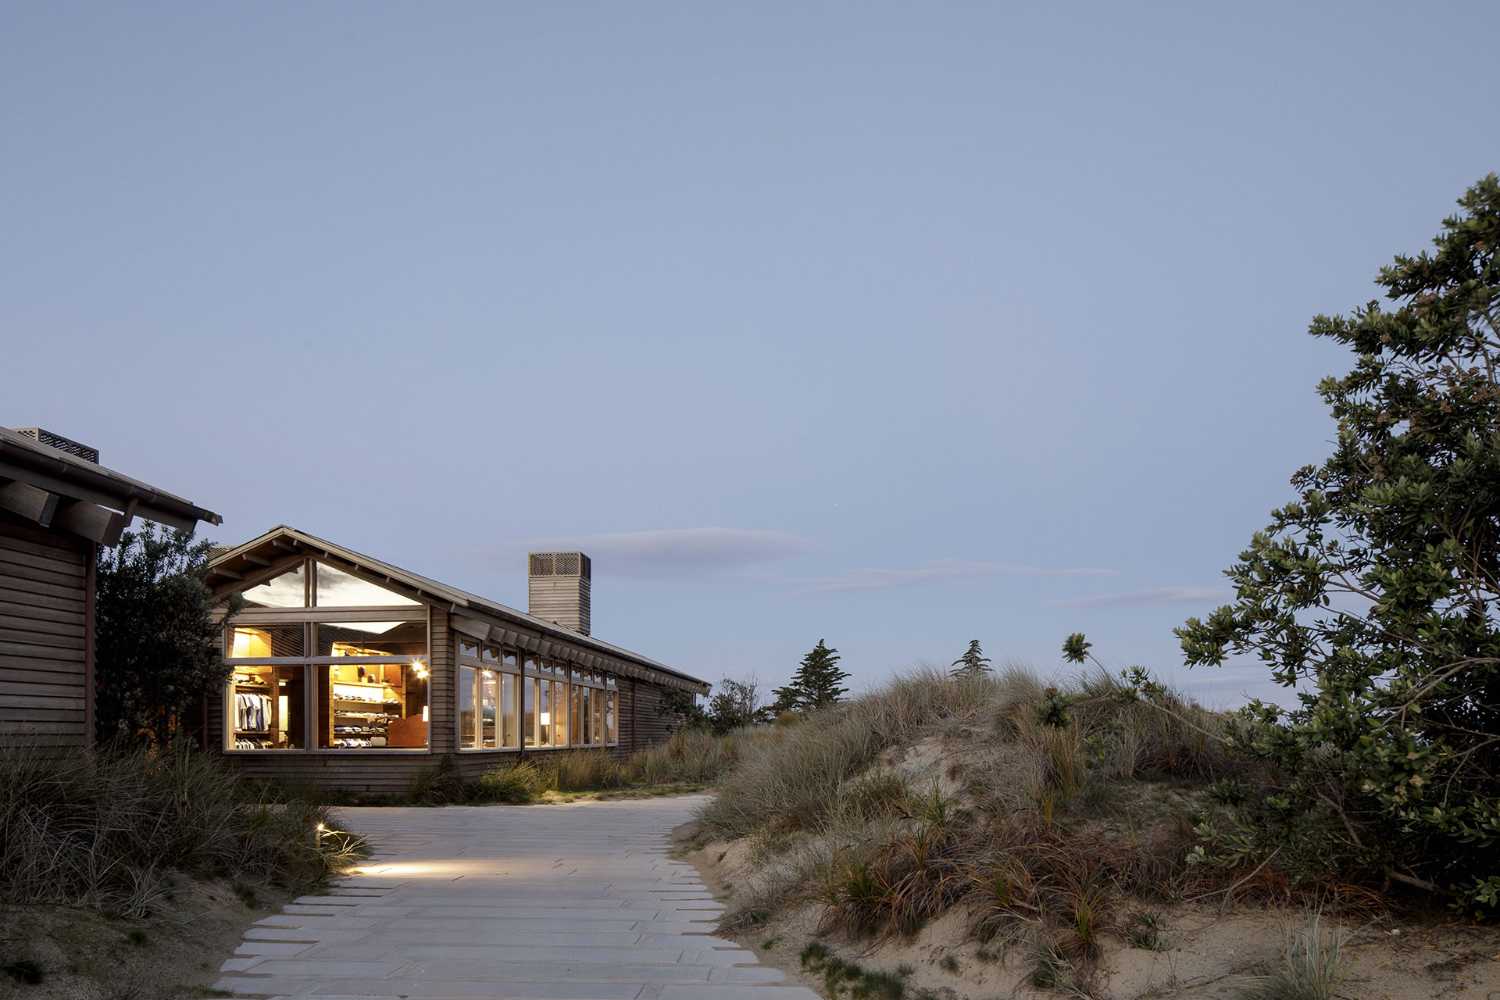 In Nuova Zelanda campi da golf, dune di sabbia e mare abbracciano l’architettura delicata della Tara Iti Clubhouse